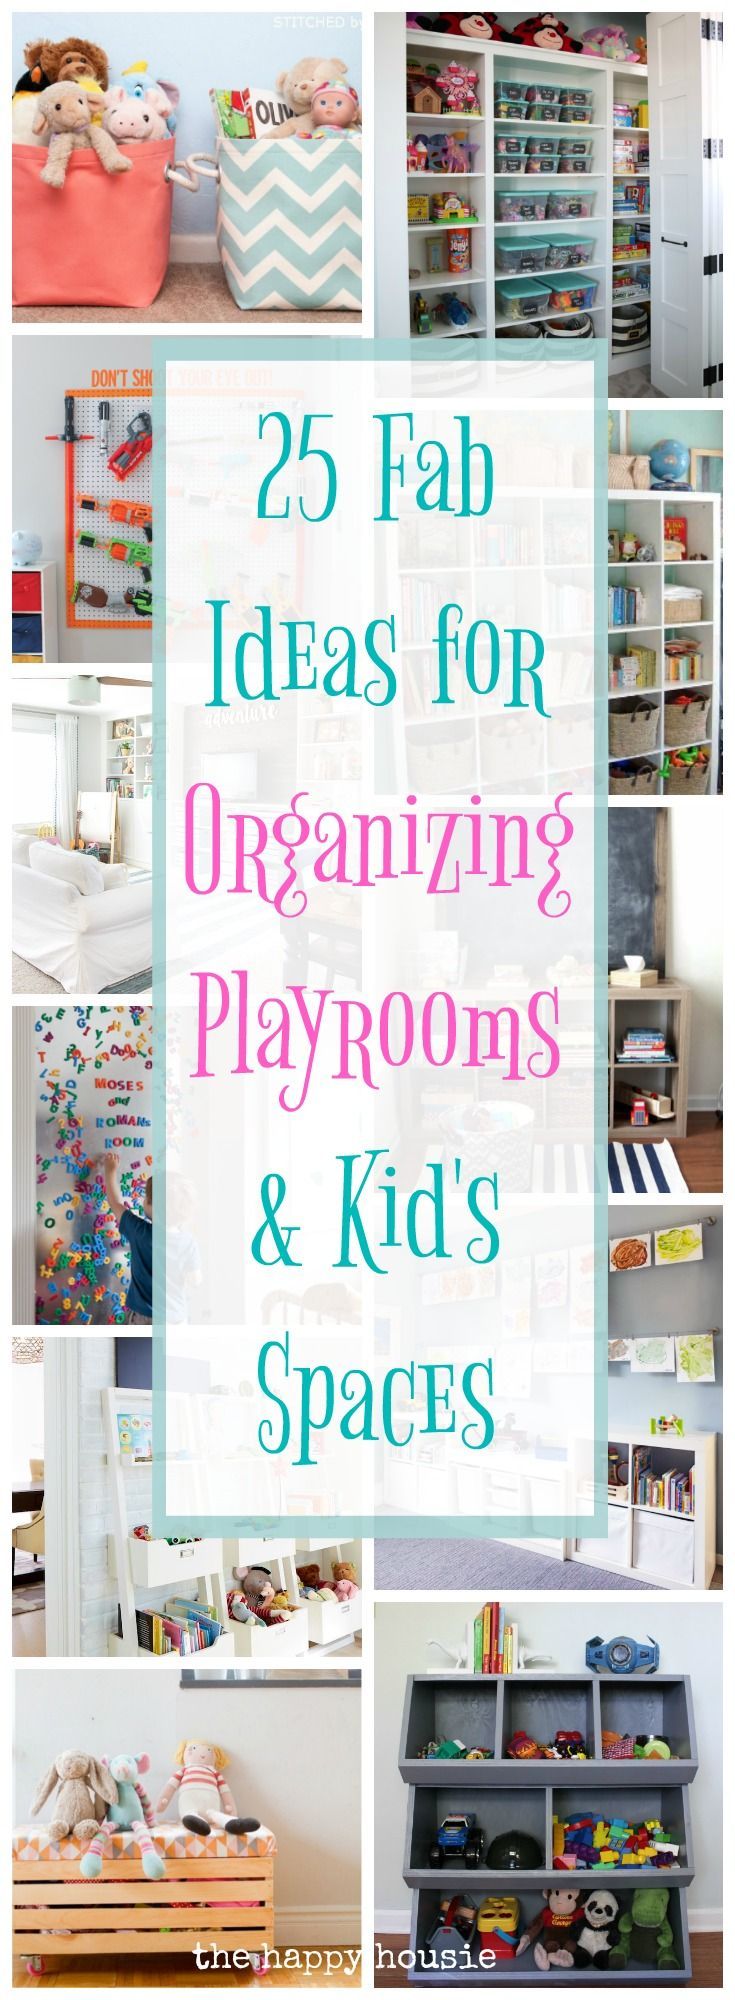 24 diy kids storage
 ideas